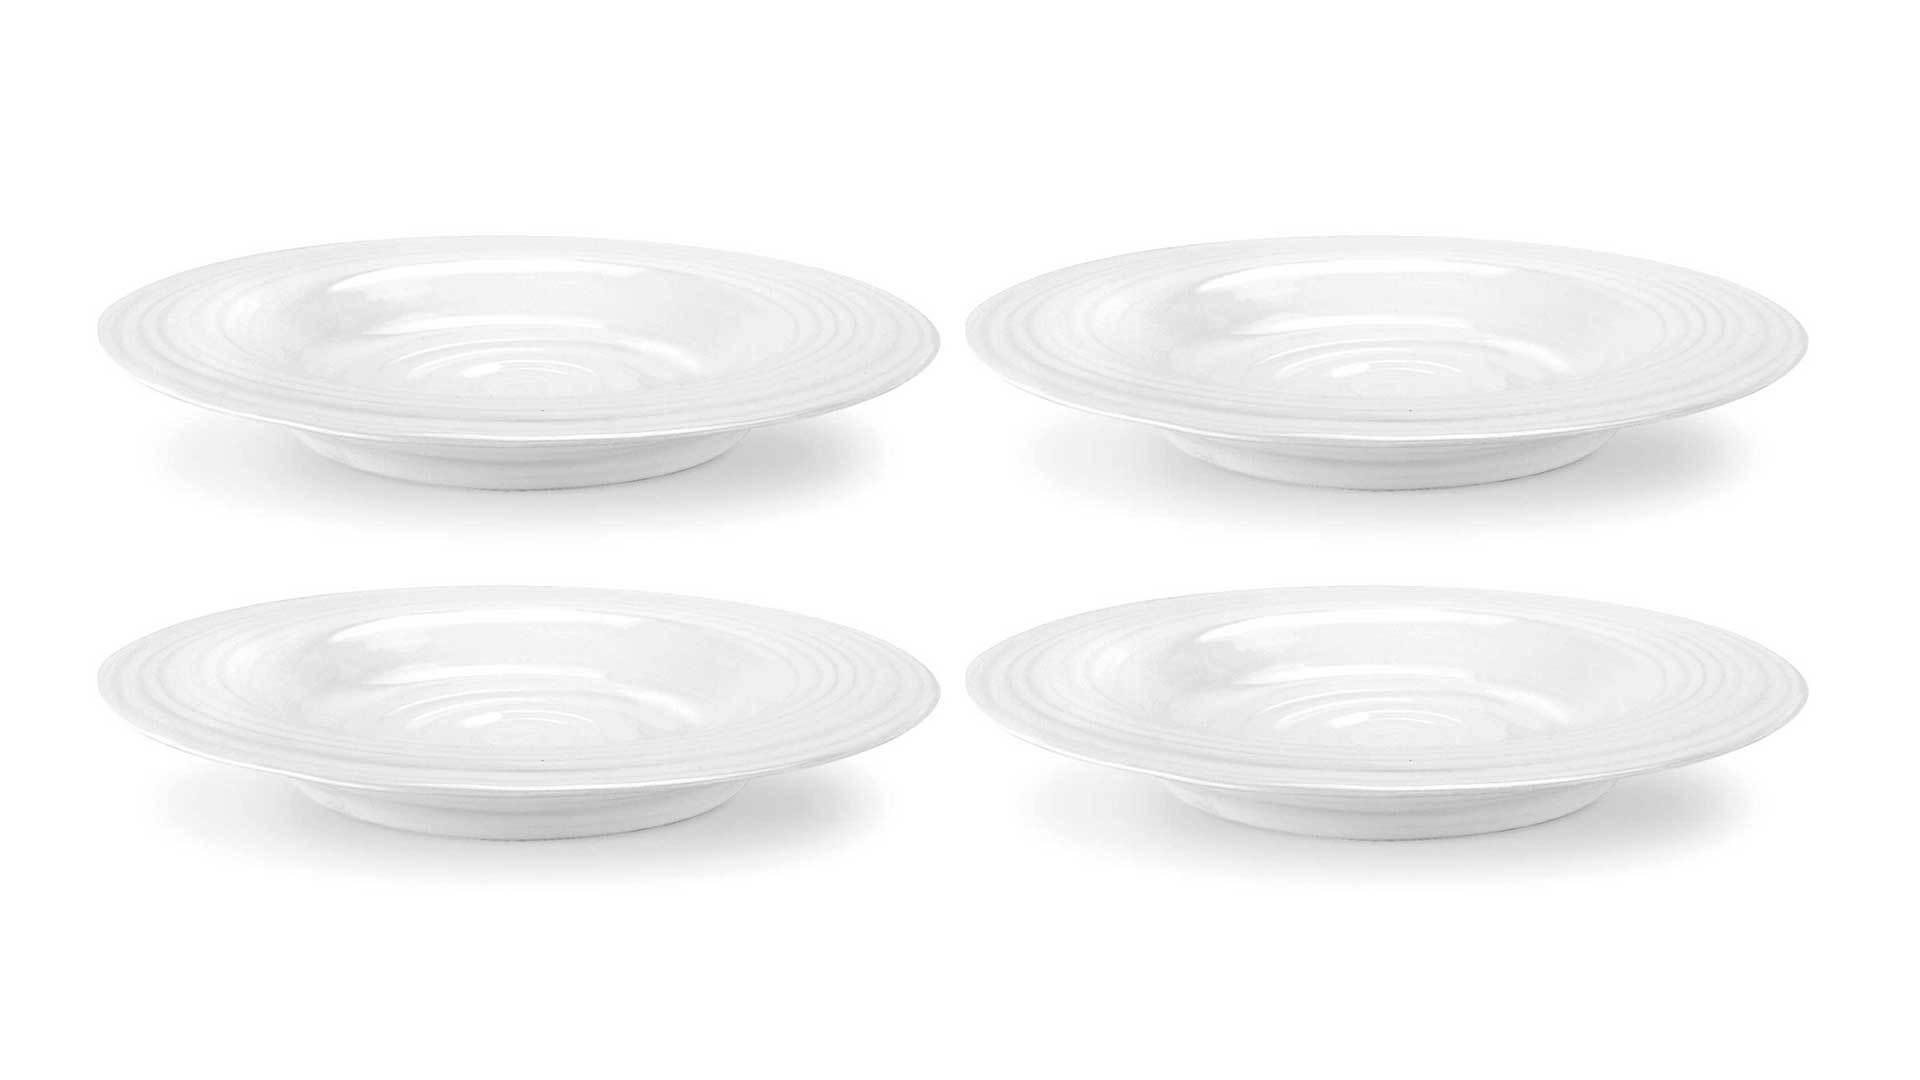 Набор тарелок суповых Portmeirion Софи Конран для Портмейрион 25 см, 4 шт, белый